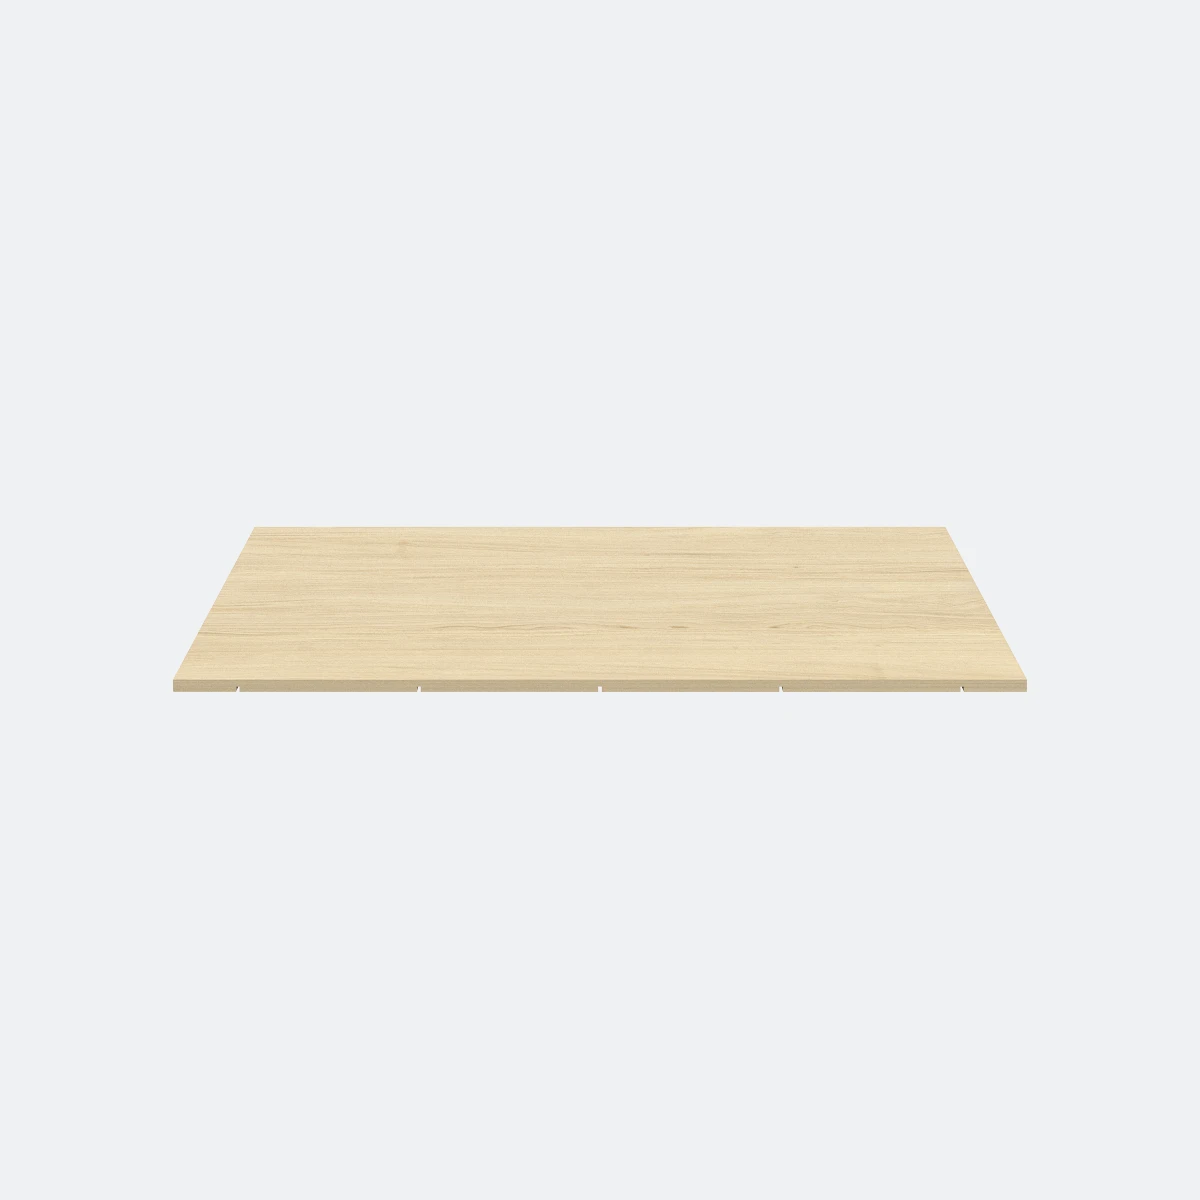 Produktbild (Holz-Abdeckboden für LED-Leuchte einseitig – mittig)